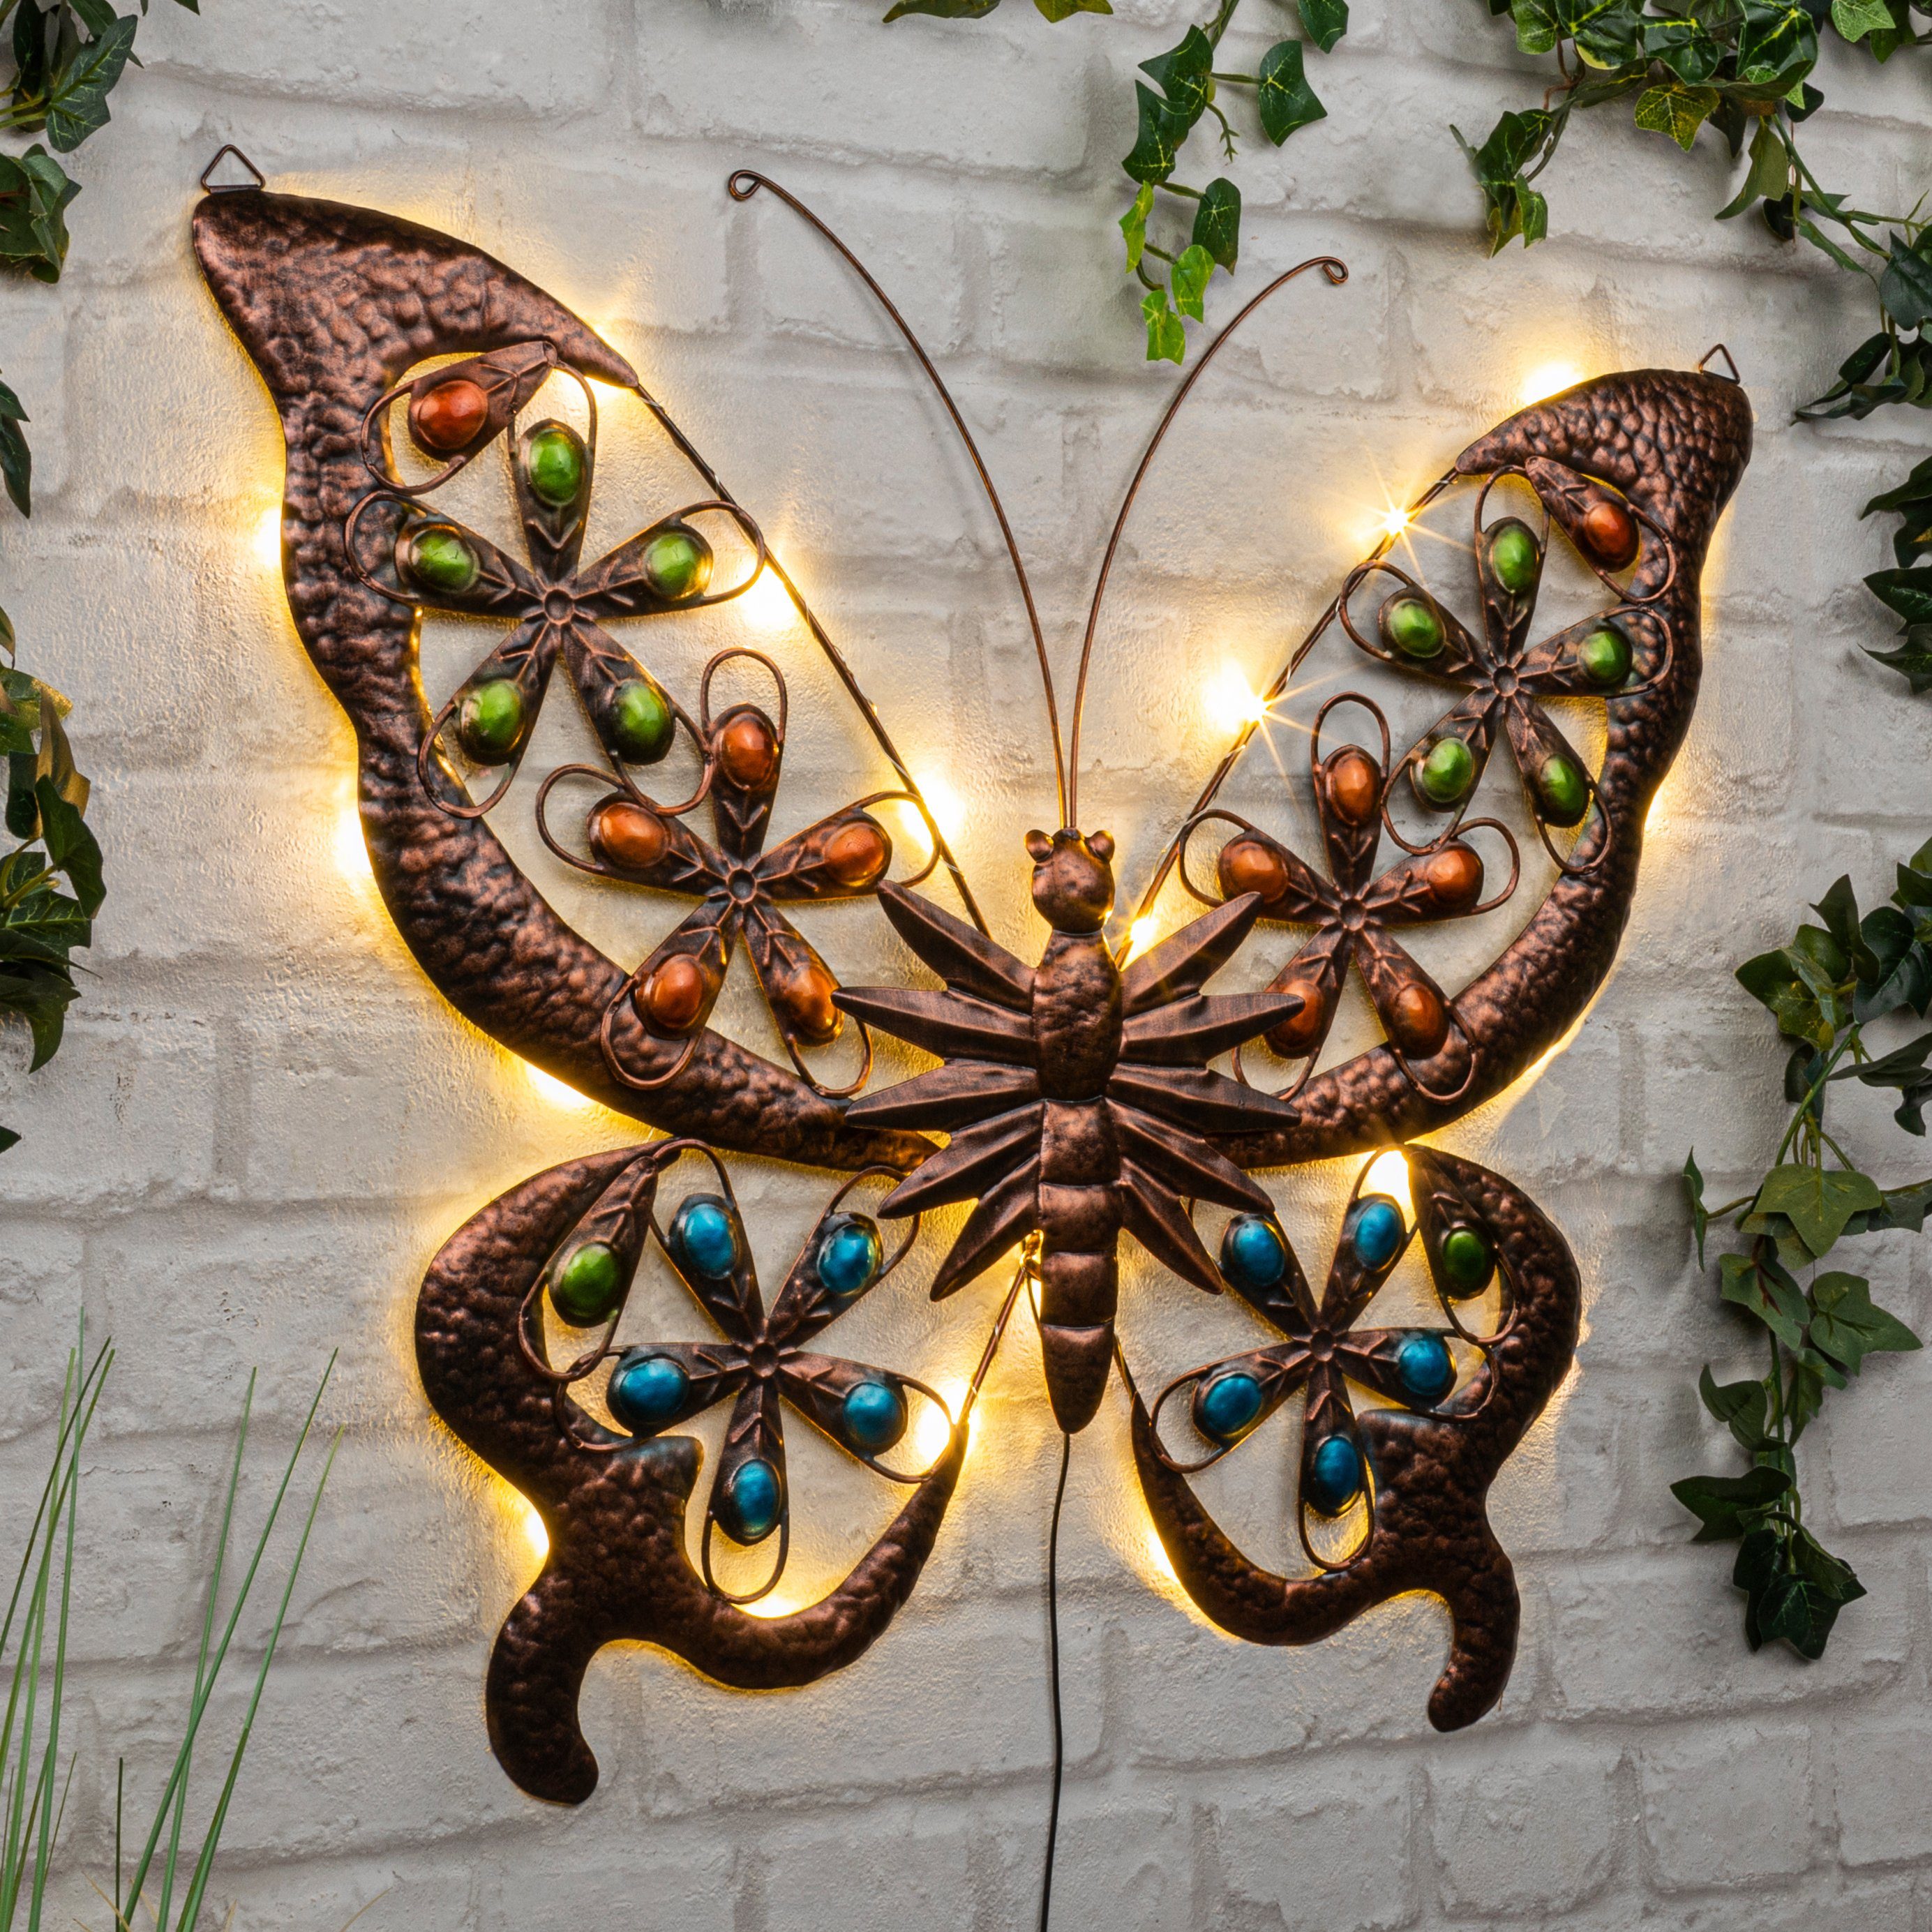 Mignon LEDs, Inklusive Schmetterling 3D habeig 24 mit Akku aufladbarer LED-Beleuchtung AA LED Wandpaneel 1x Solar-Wandlicht